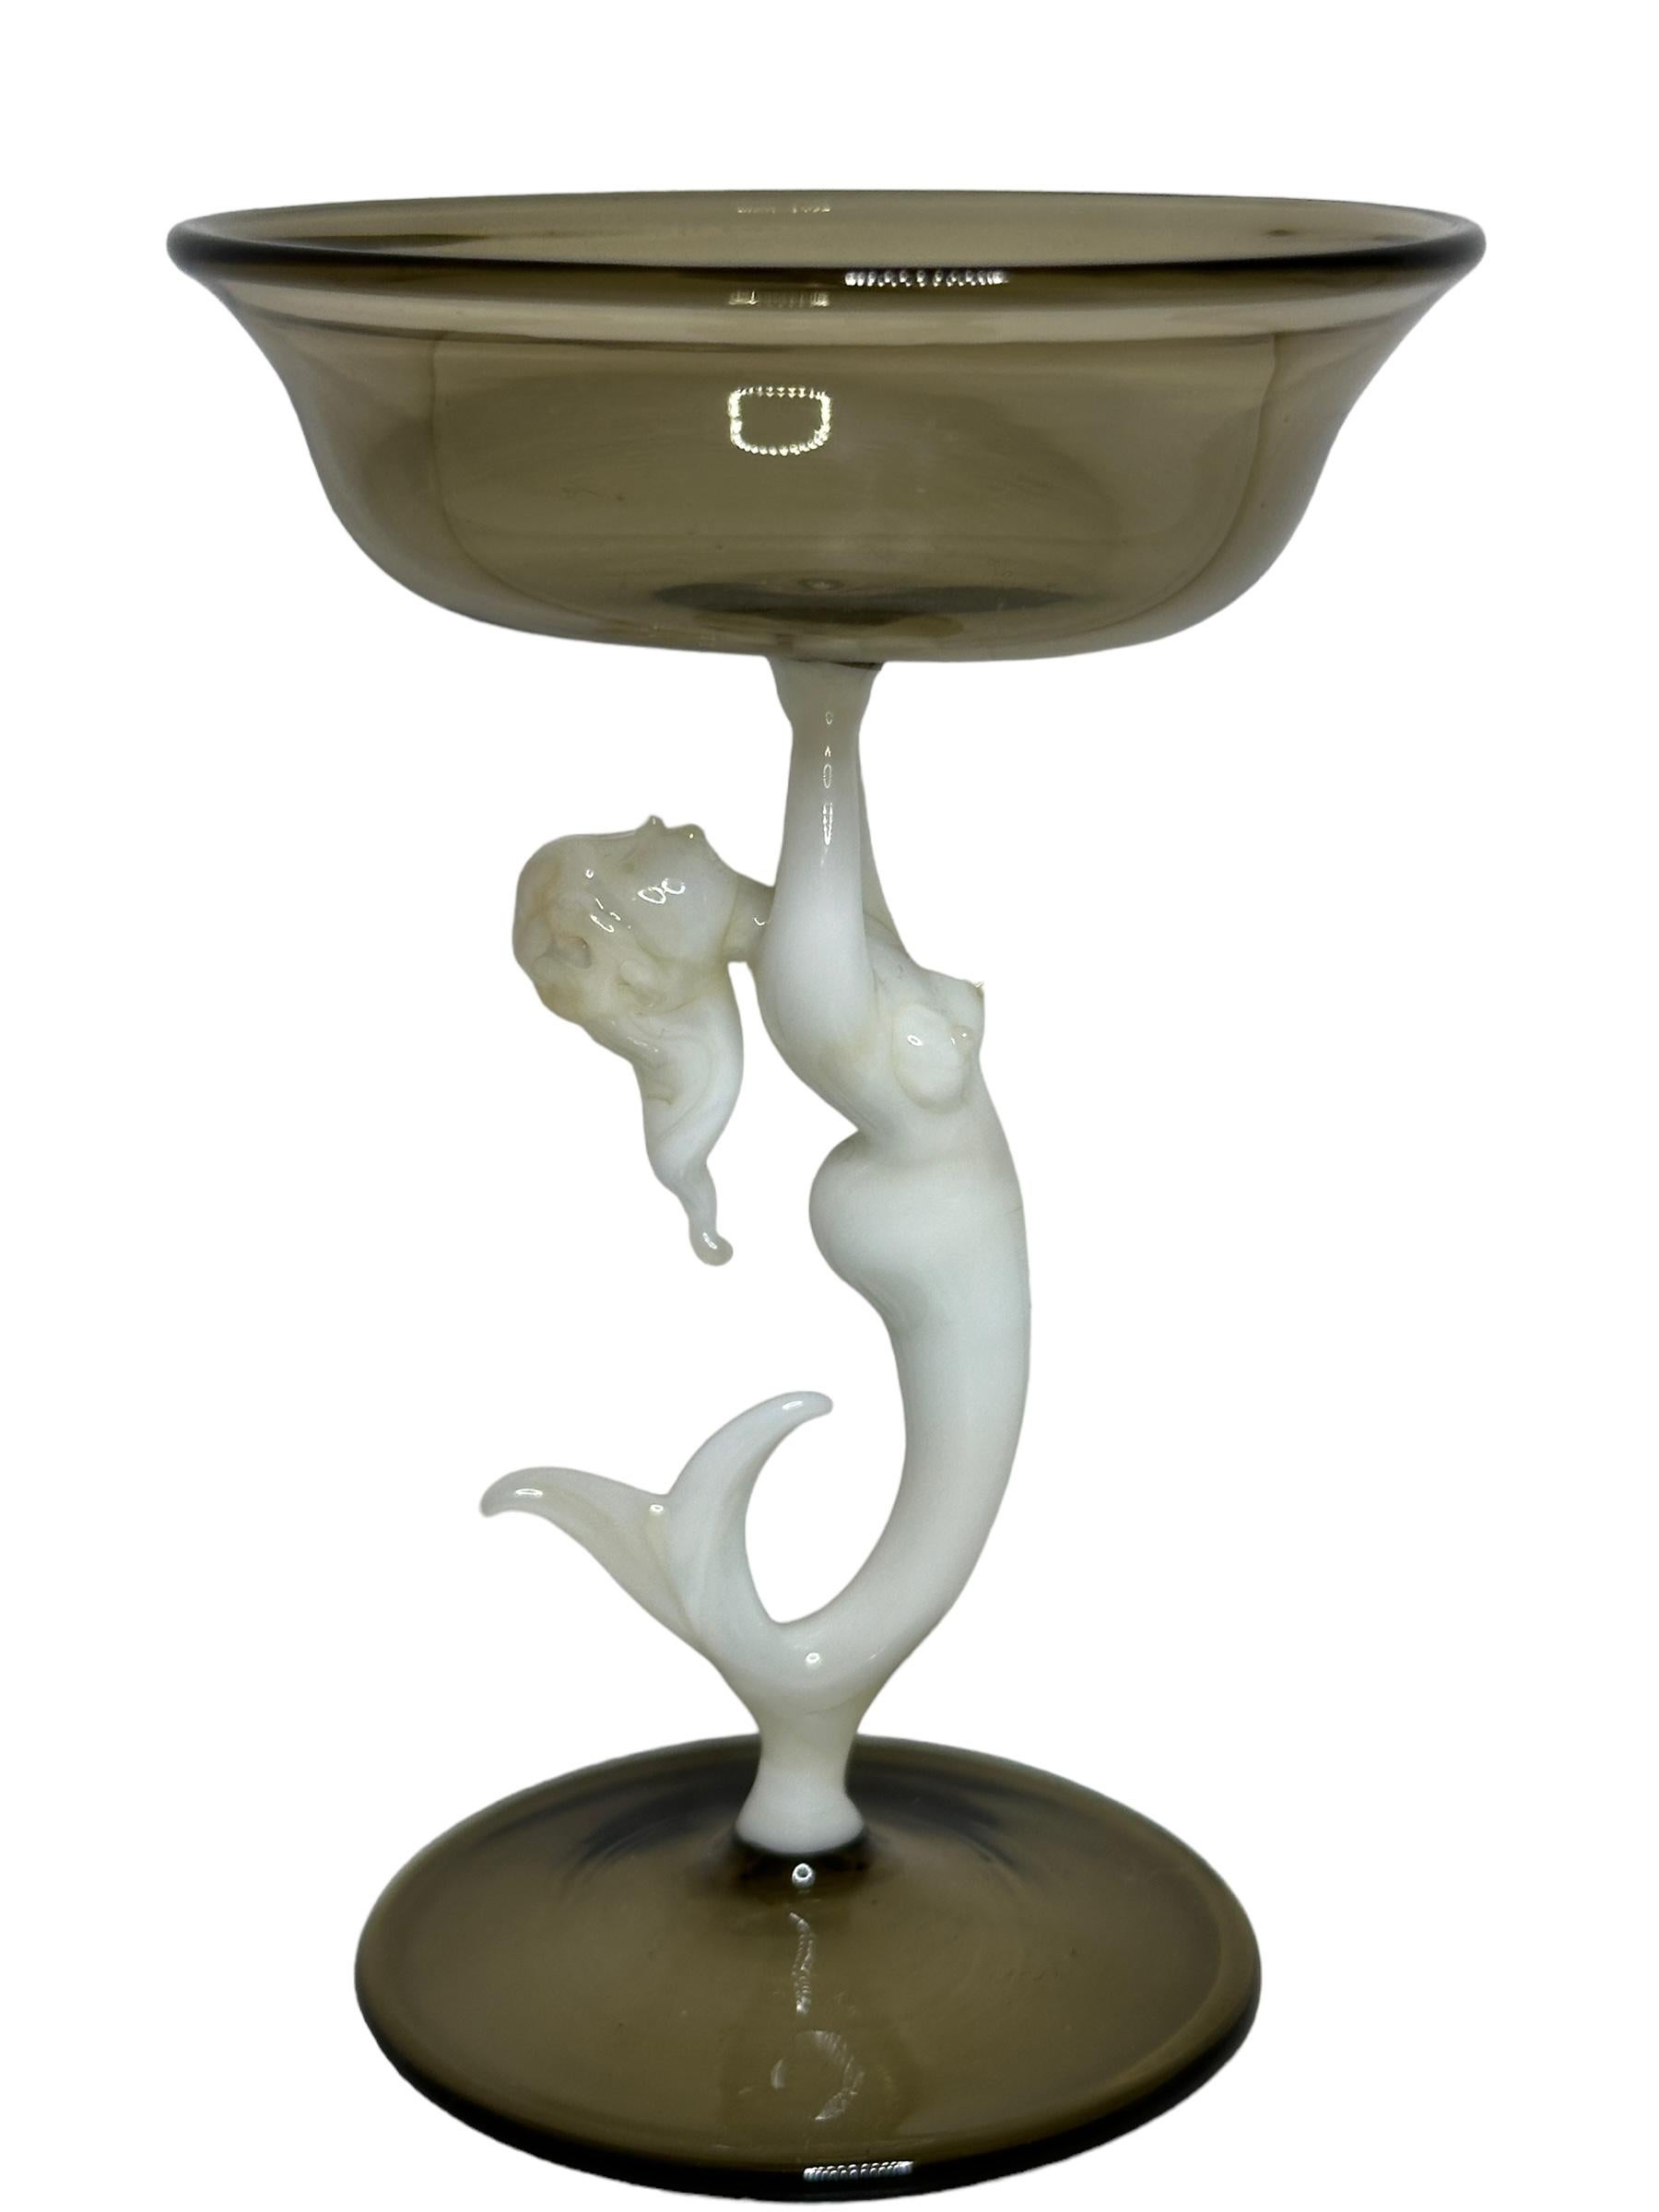 Dies ist ein wunderschönes Likörglas mit einem Stiel aus Österreich. Es hat einen nackten Meerjungfrauenschaft und ist im Bimini-Stil gehalten. Das Glas hat ein wunderschönes Design, der Stiel stellt eine nackte Meerjungfrau in weißer Farbe dar. Der